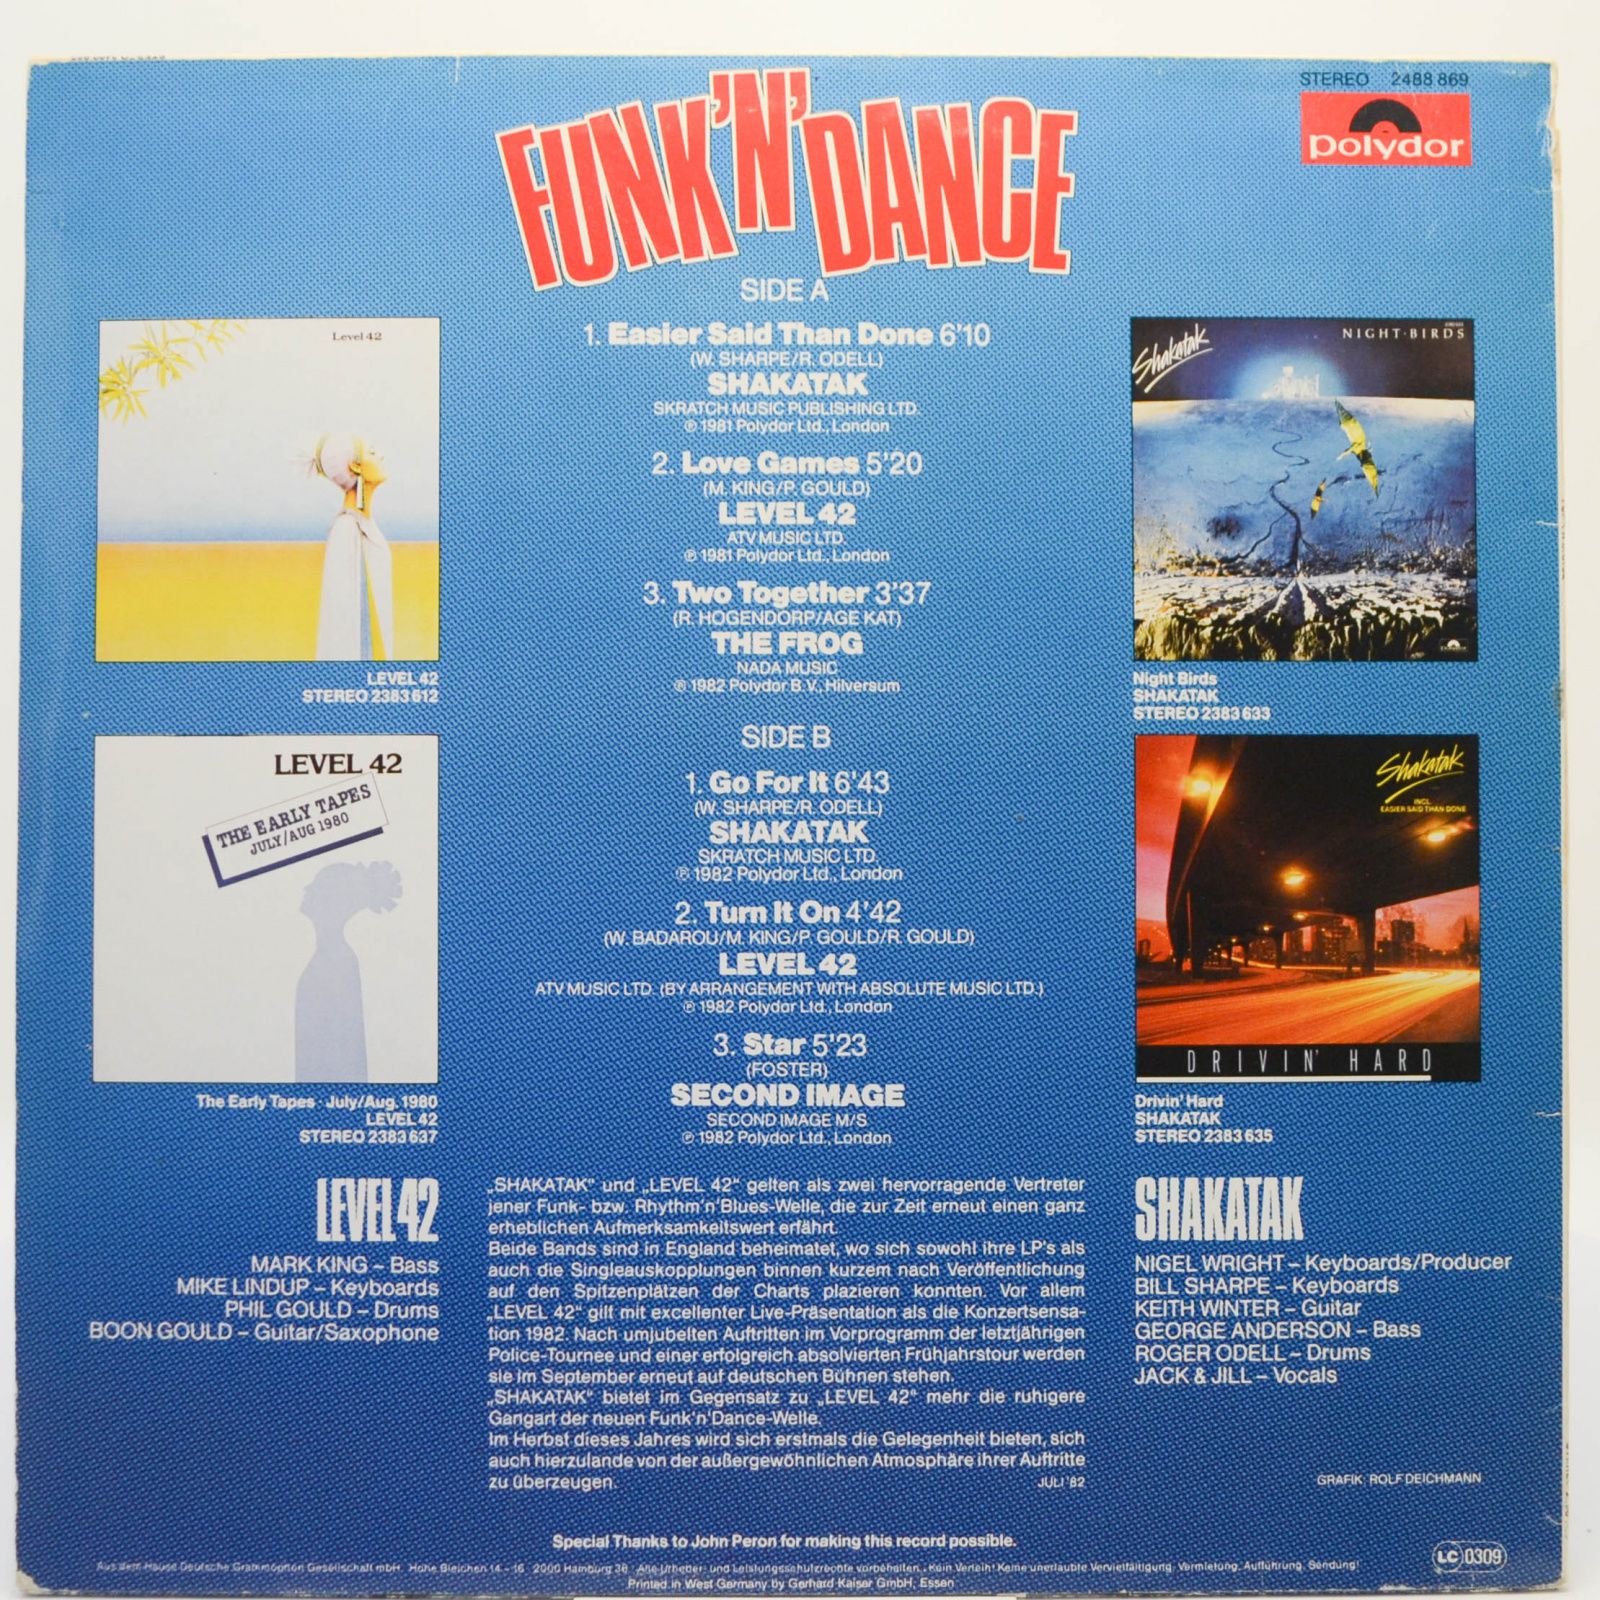 Various — Funk 'n' Dance, 1982